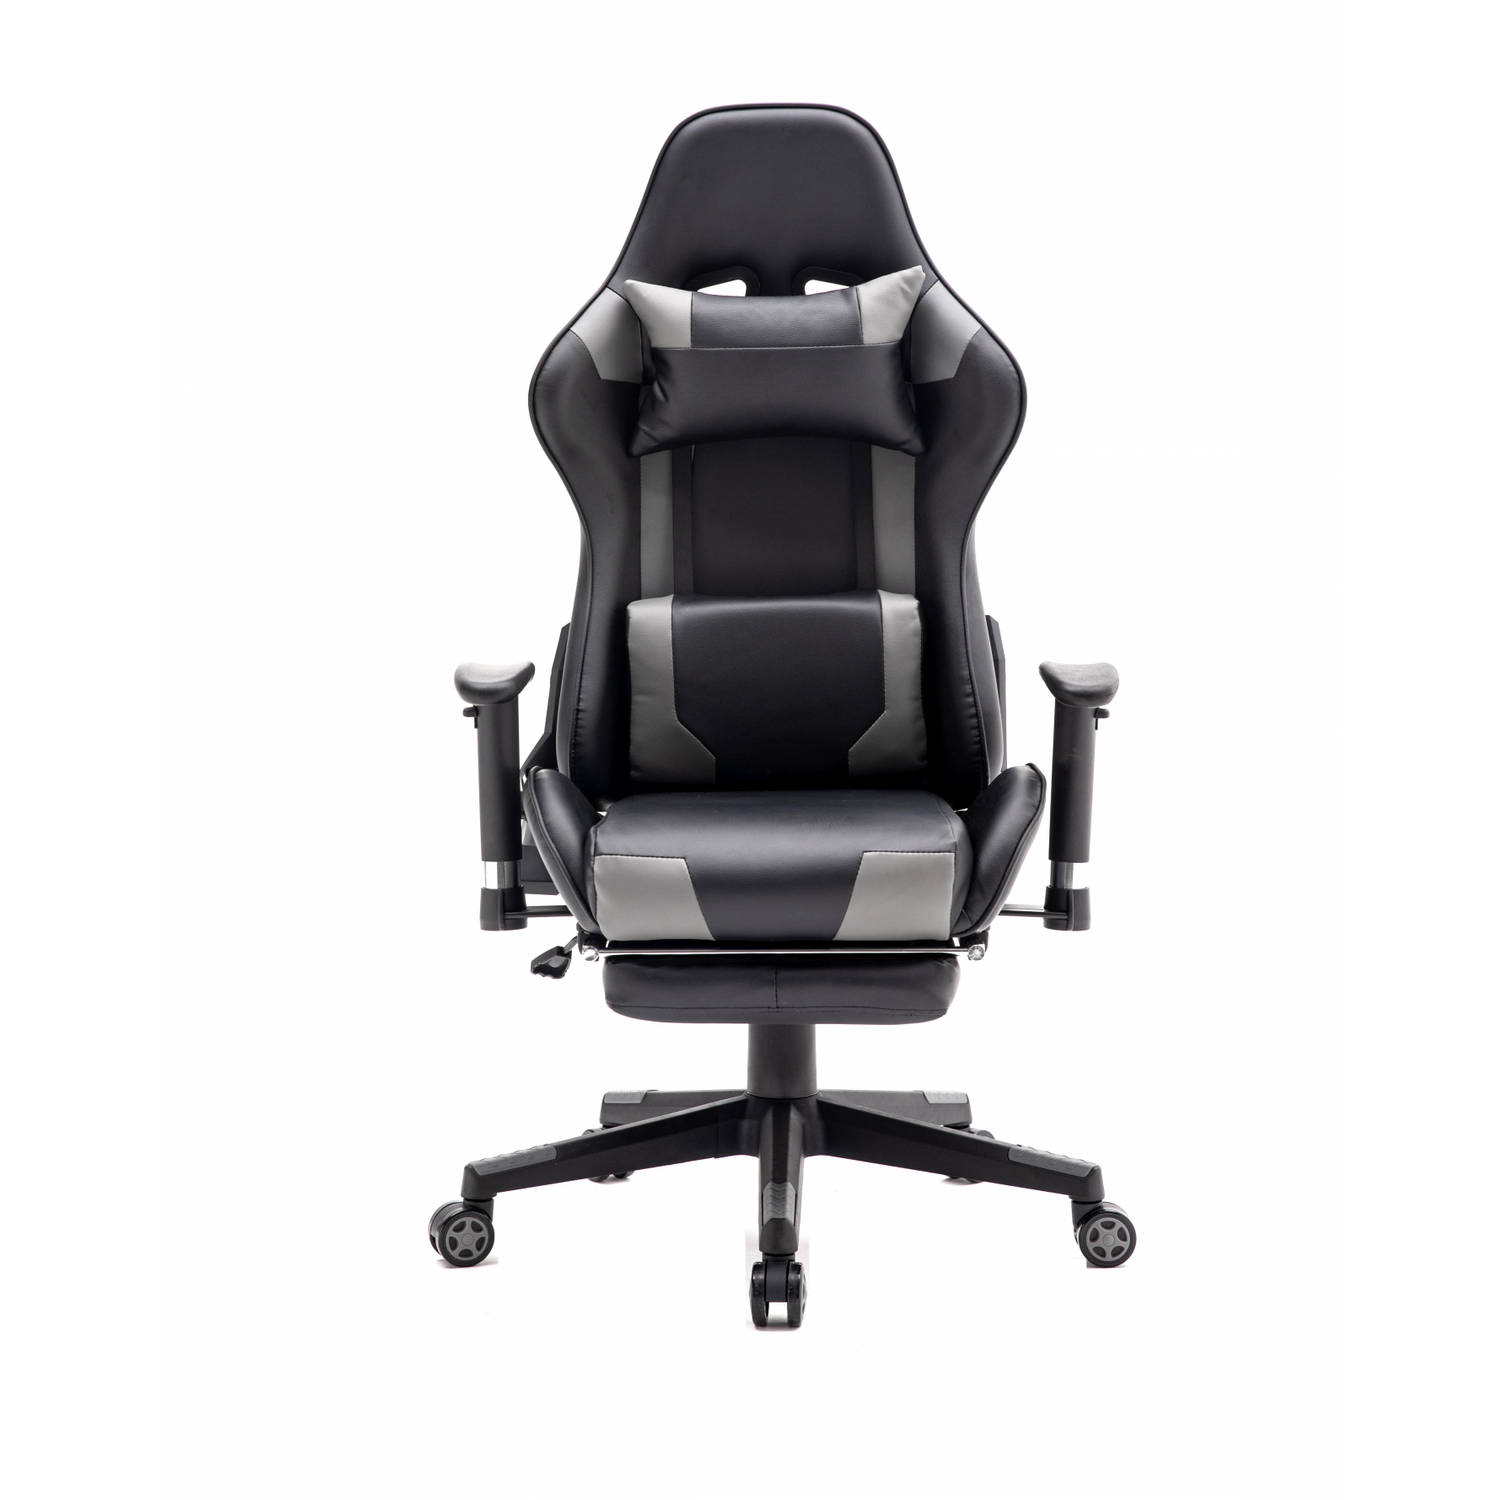 Gamestoel met voetsteun Thomas - bureaustoel - ergonomisch verstelbaar - zwart grijs